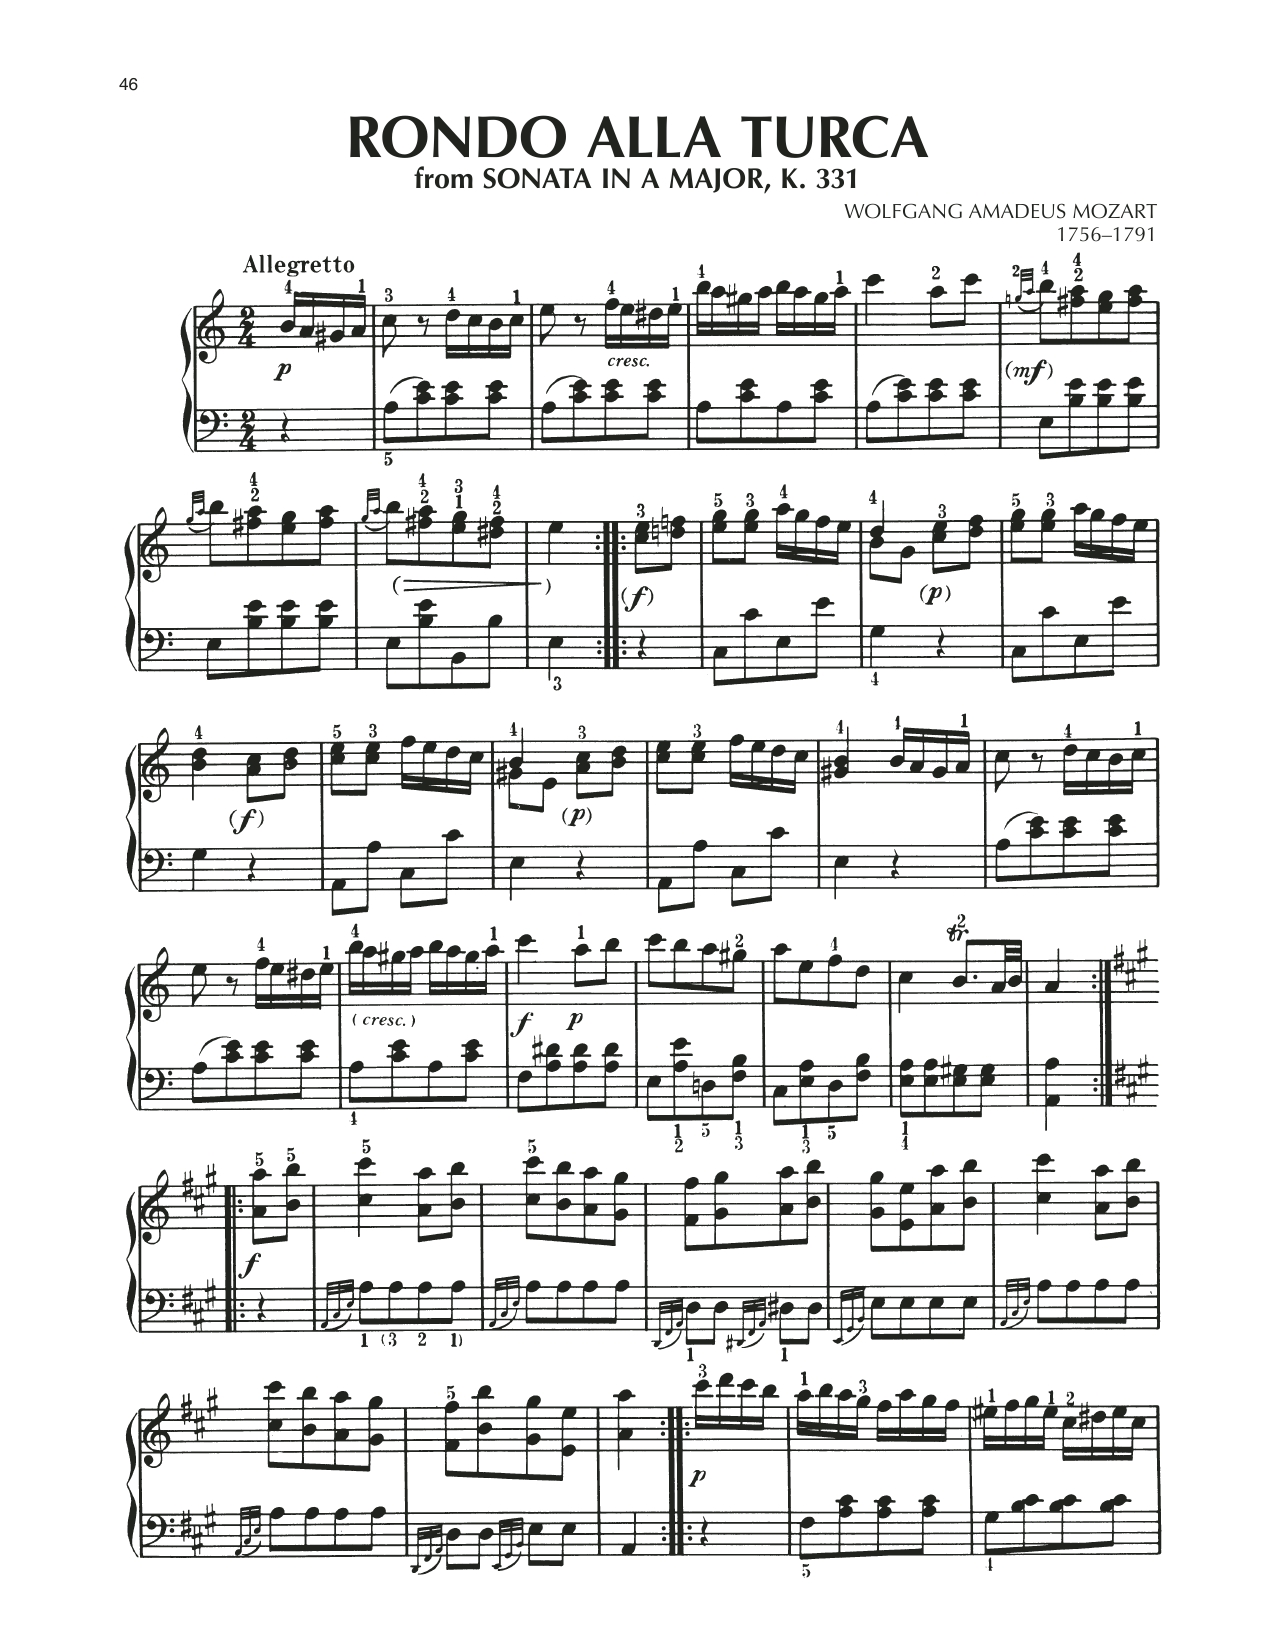 Lo spartito del rondò "Alla Turca" dalla Sonata numero 11 di Wolfgang Amdadeus Mozart